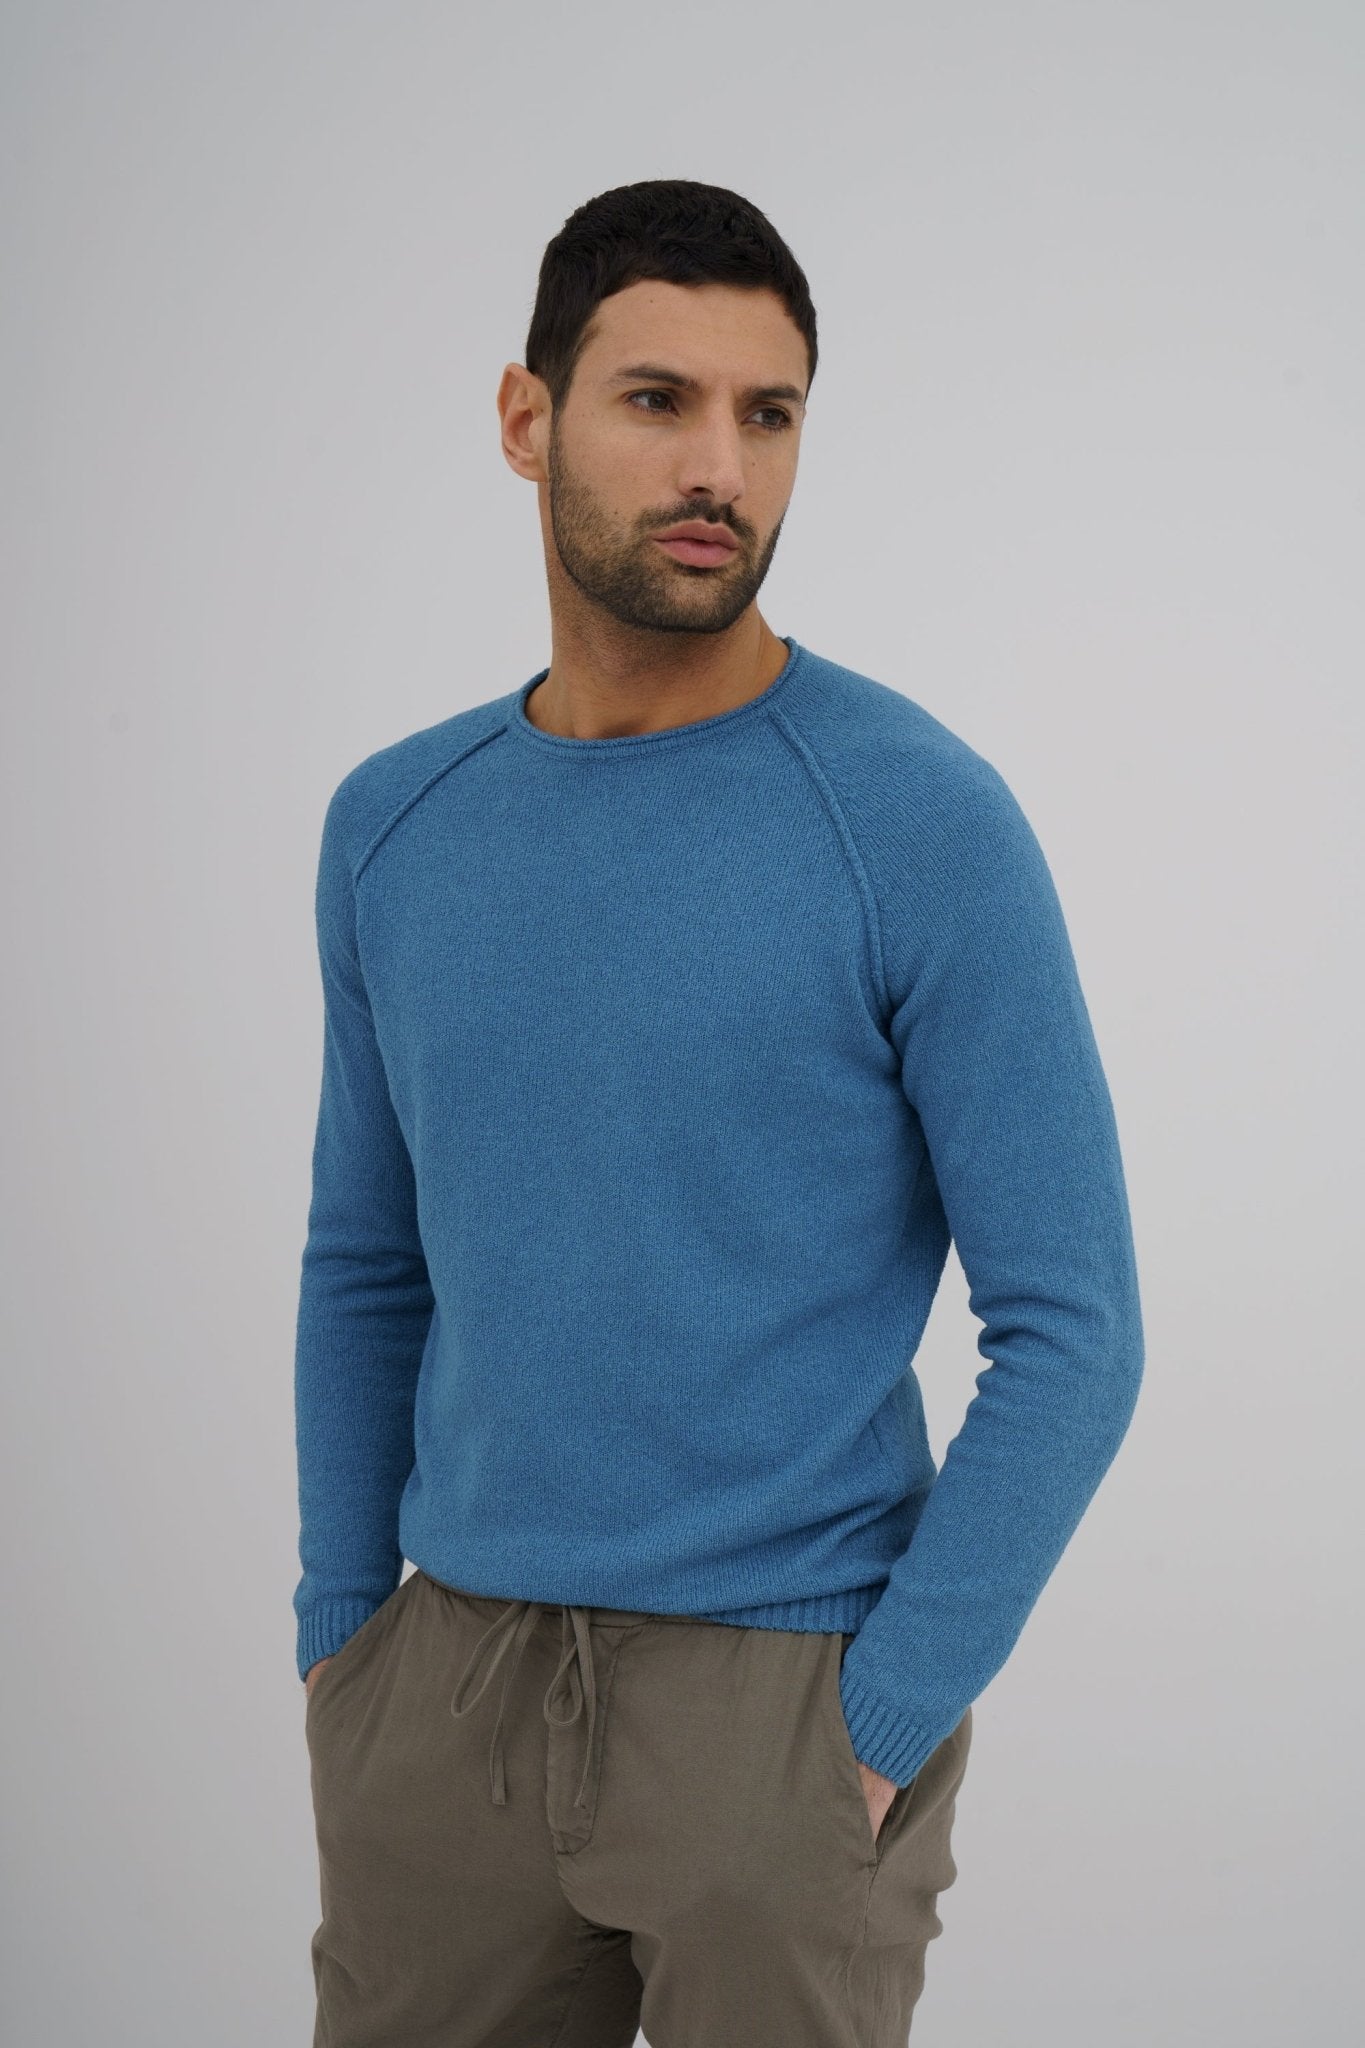 MCKINNON x FERRANTE Long Sleeve Crew Neck Sweater in MID BLUE - Henry BucksKnitwear38SS230078 - MBLU - 50